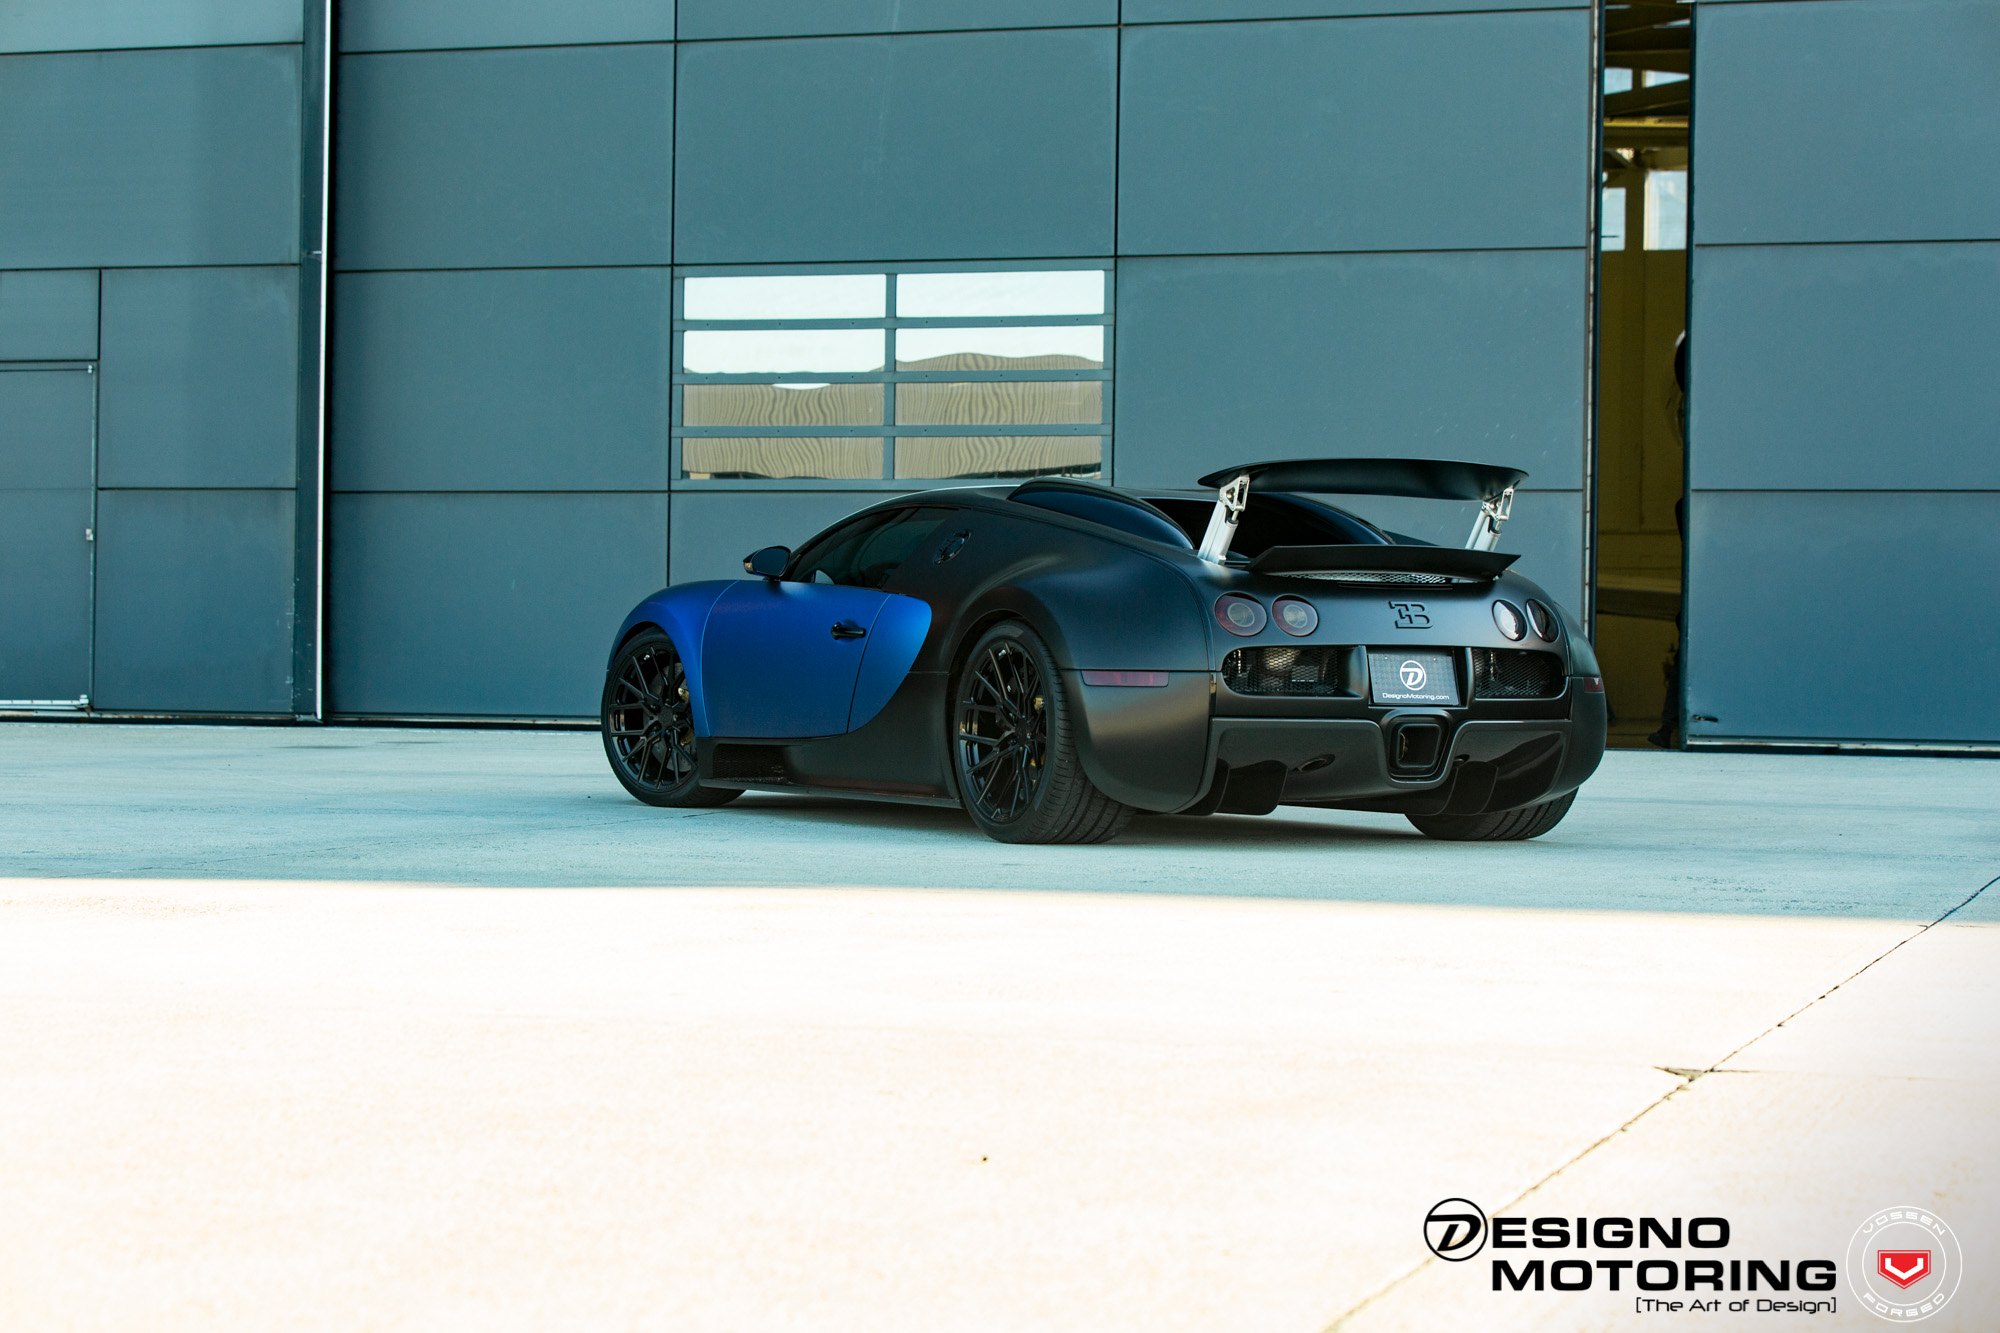 Aftermarket Rear Diffuser on Dark Blue Bugatti Veyron - Photo by Vossen